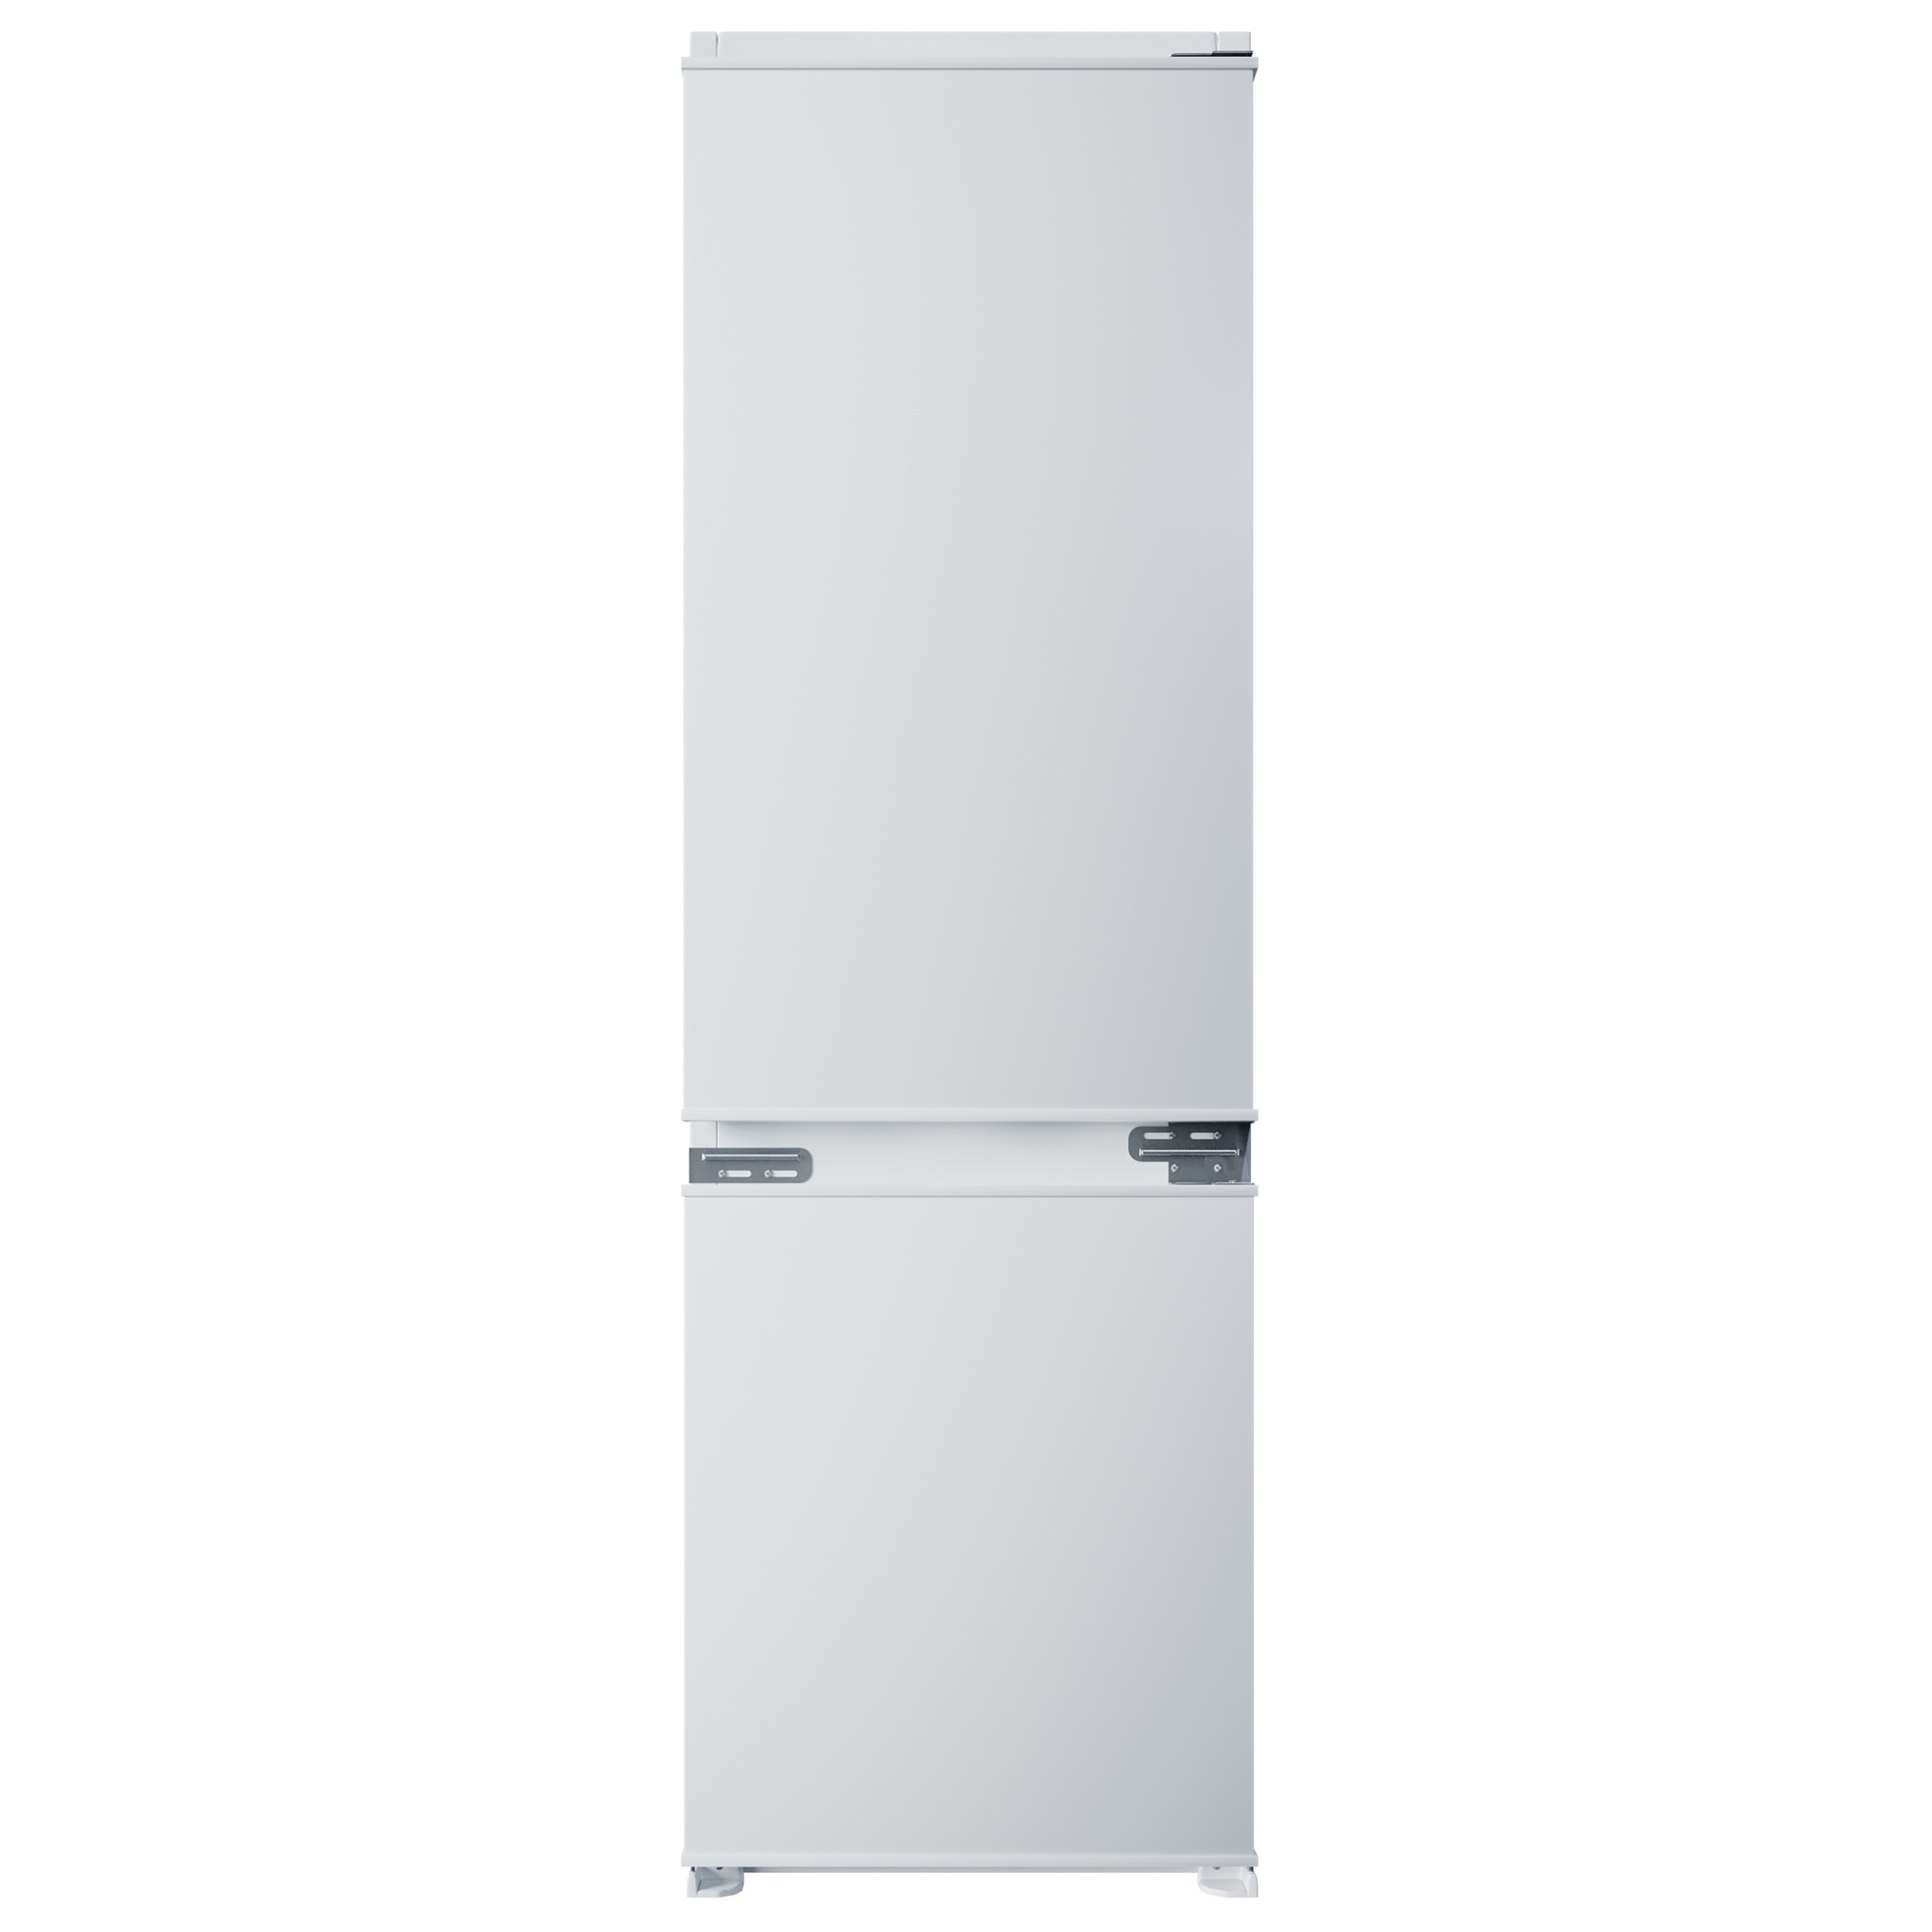 Встраиваемый холодильник Krona BALFRIN KRFR 101 белый встраиваемый холодильник krona gorner